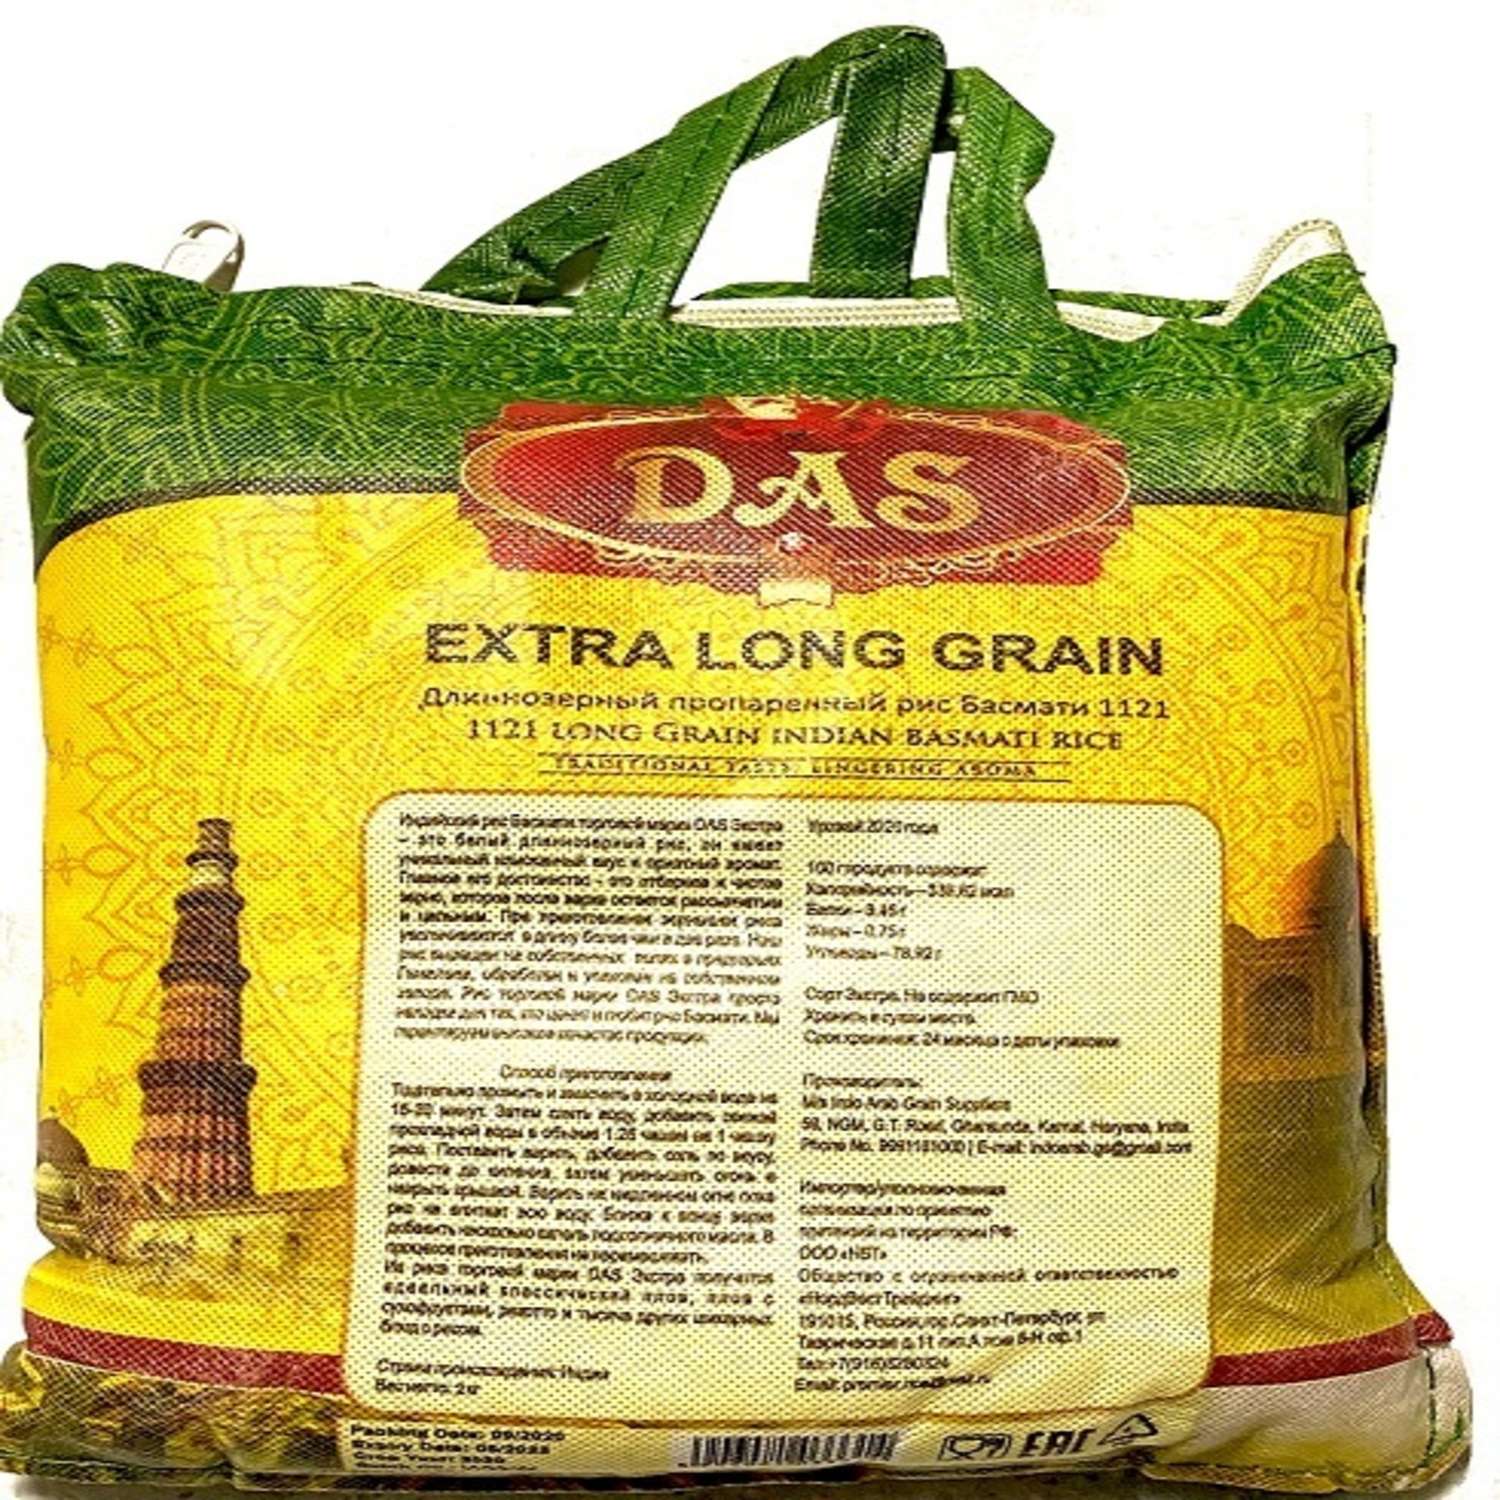 Рис басмати индийский DAS пропаренный мешок на молнии 2 кг - фото 2